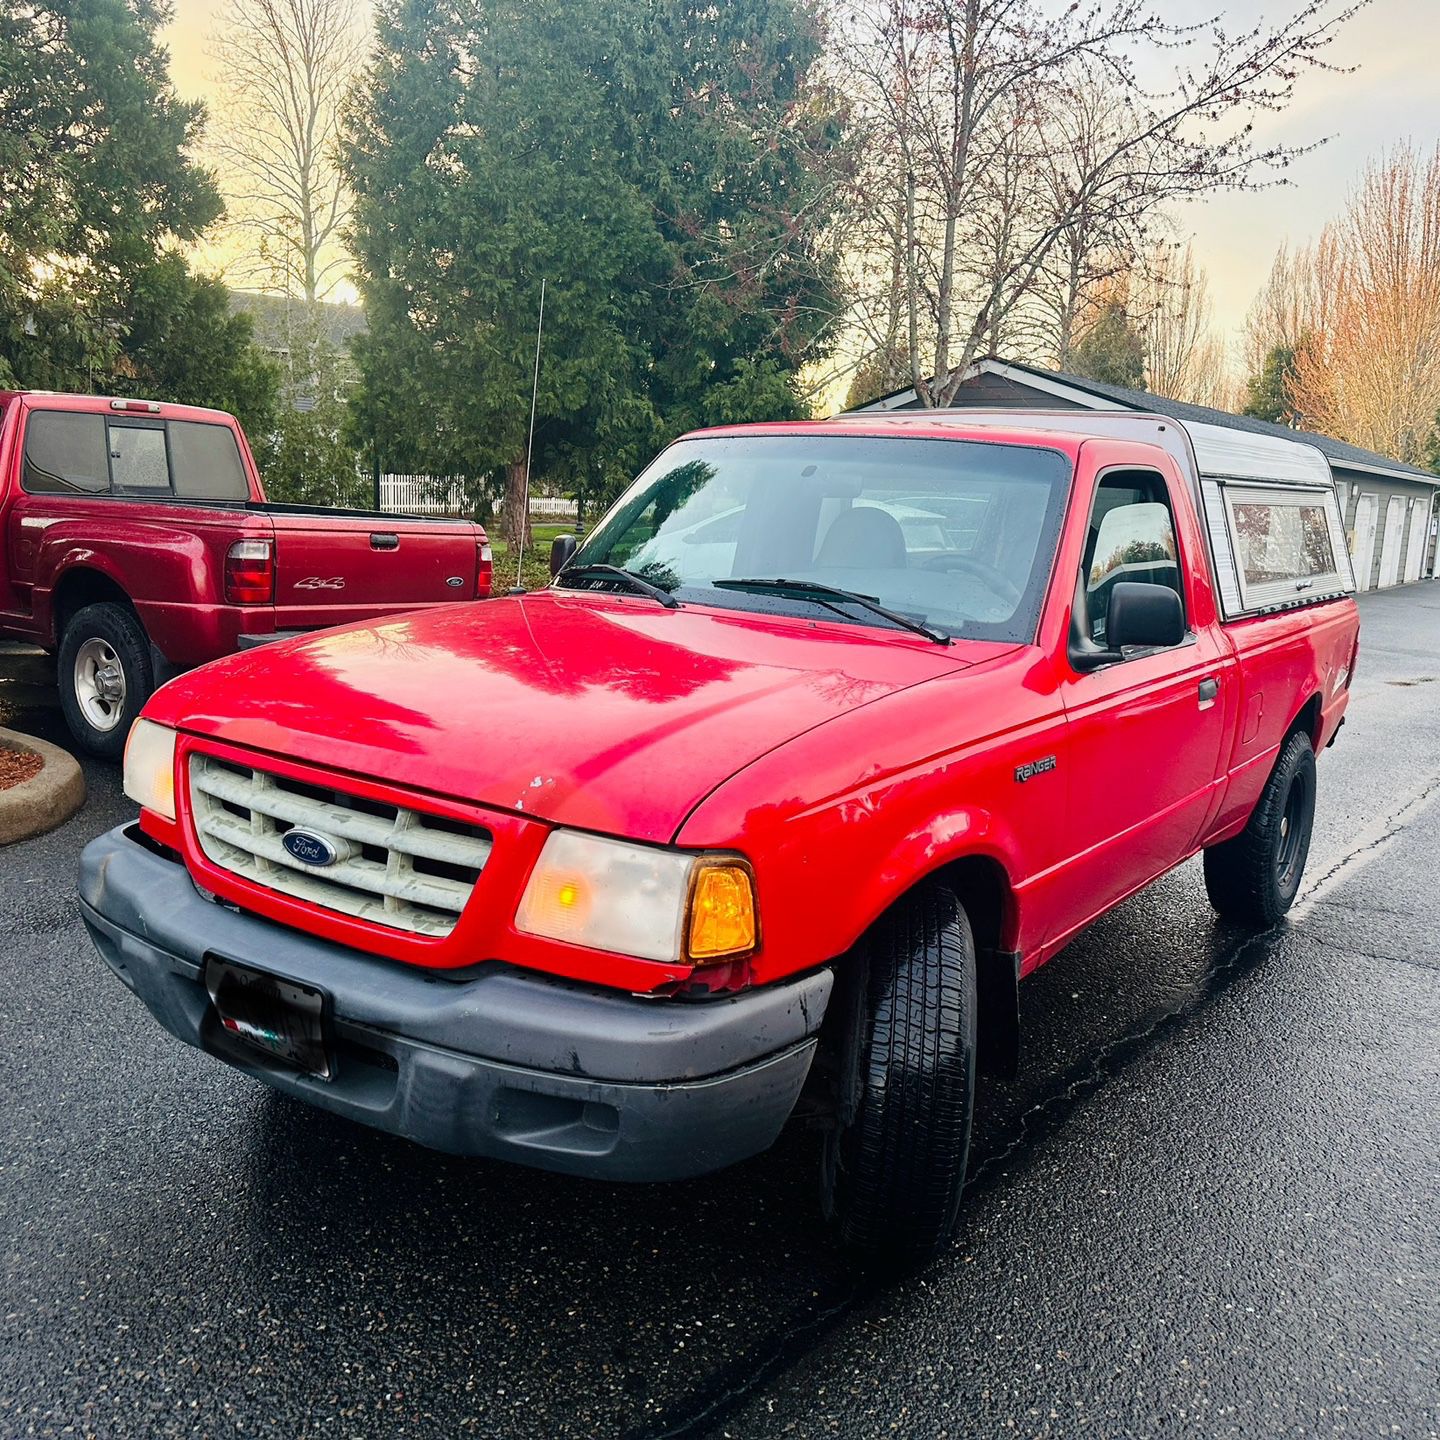 2001 Ford Ranger